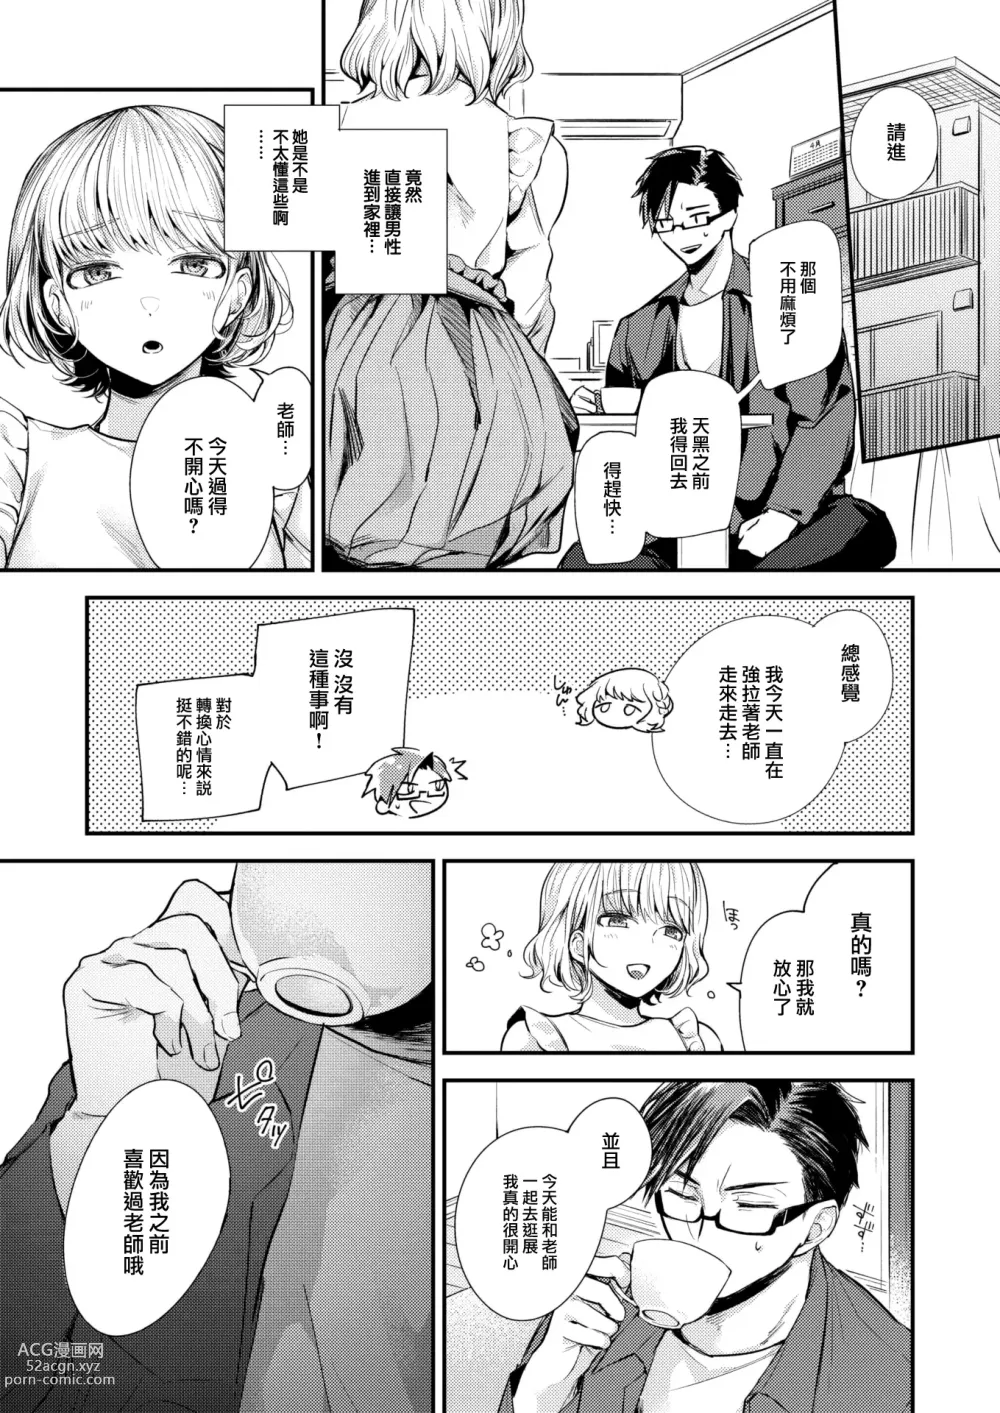 Page 8 of manga Sekishun no Jou